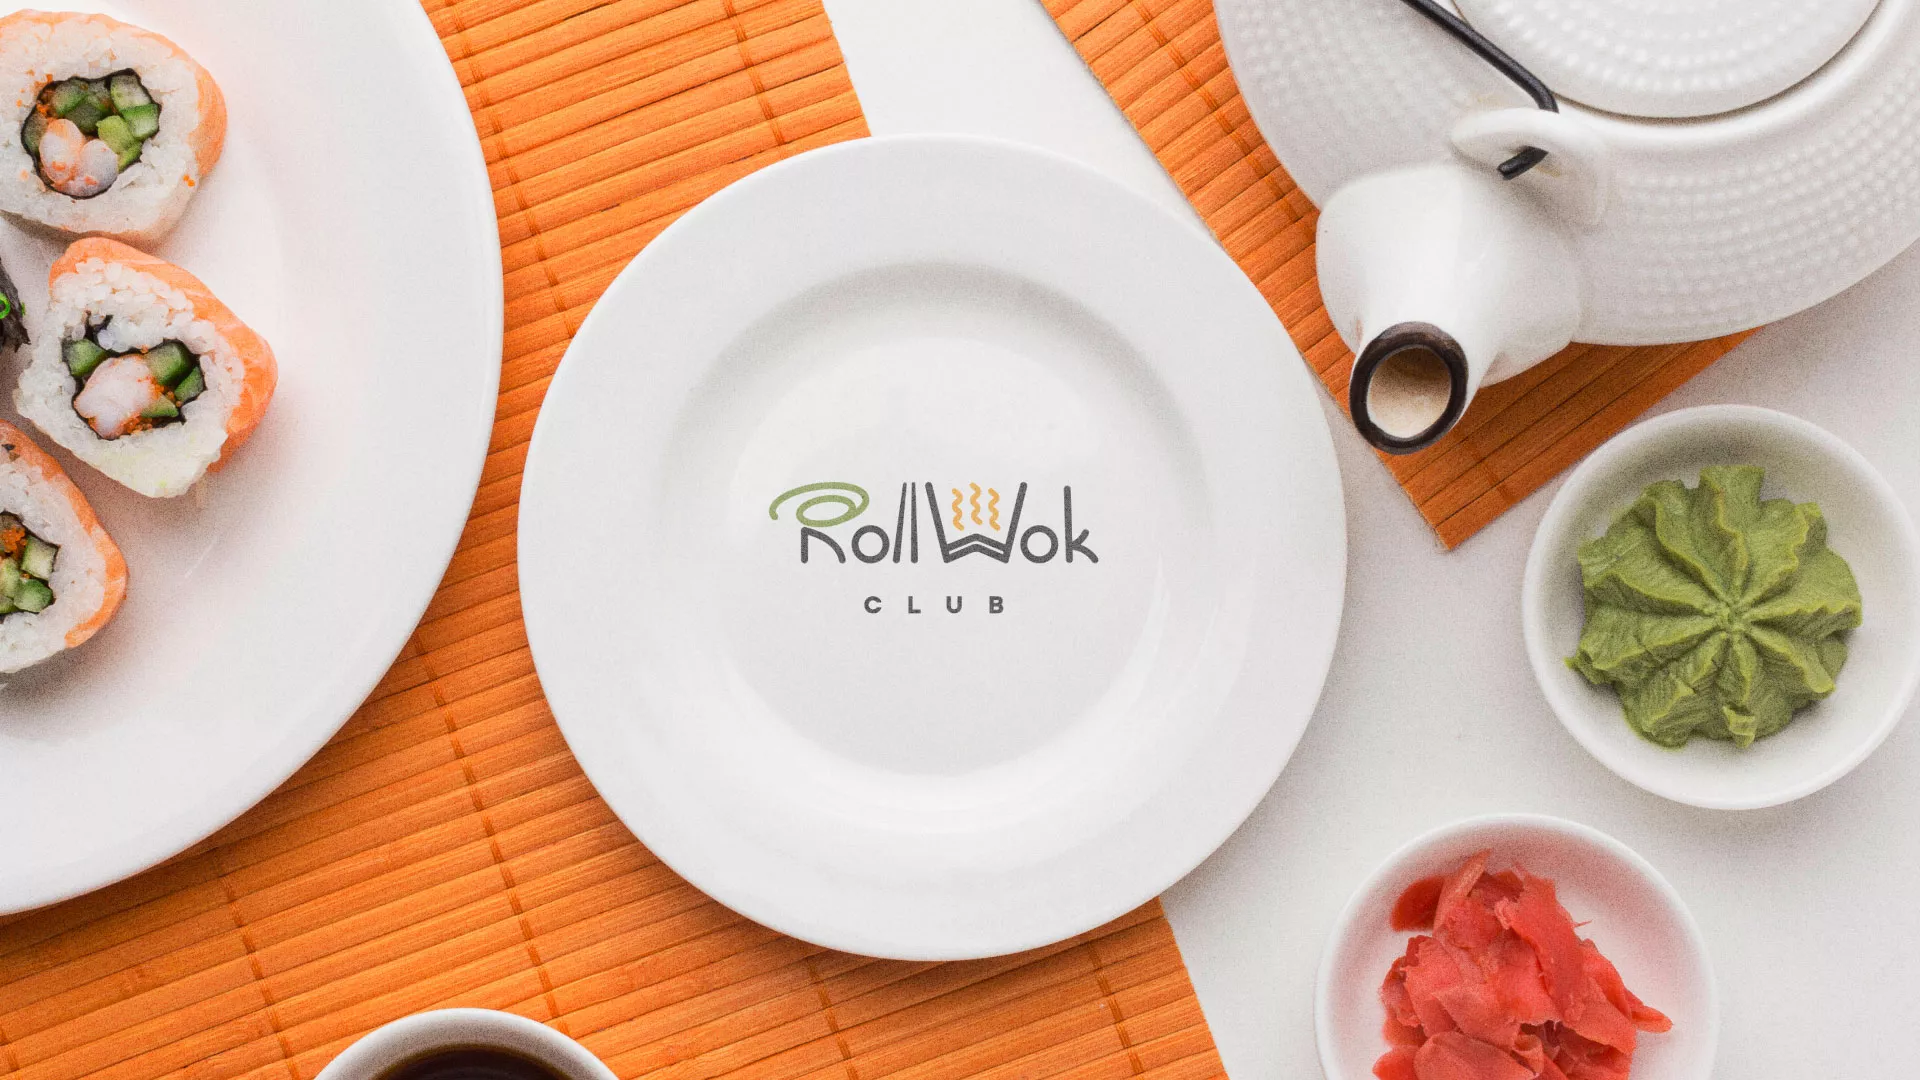 Разработка логотипа и фирменного стиля суши-бара «Roll Wok Club» в Пятигорске